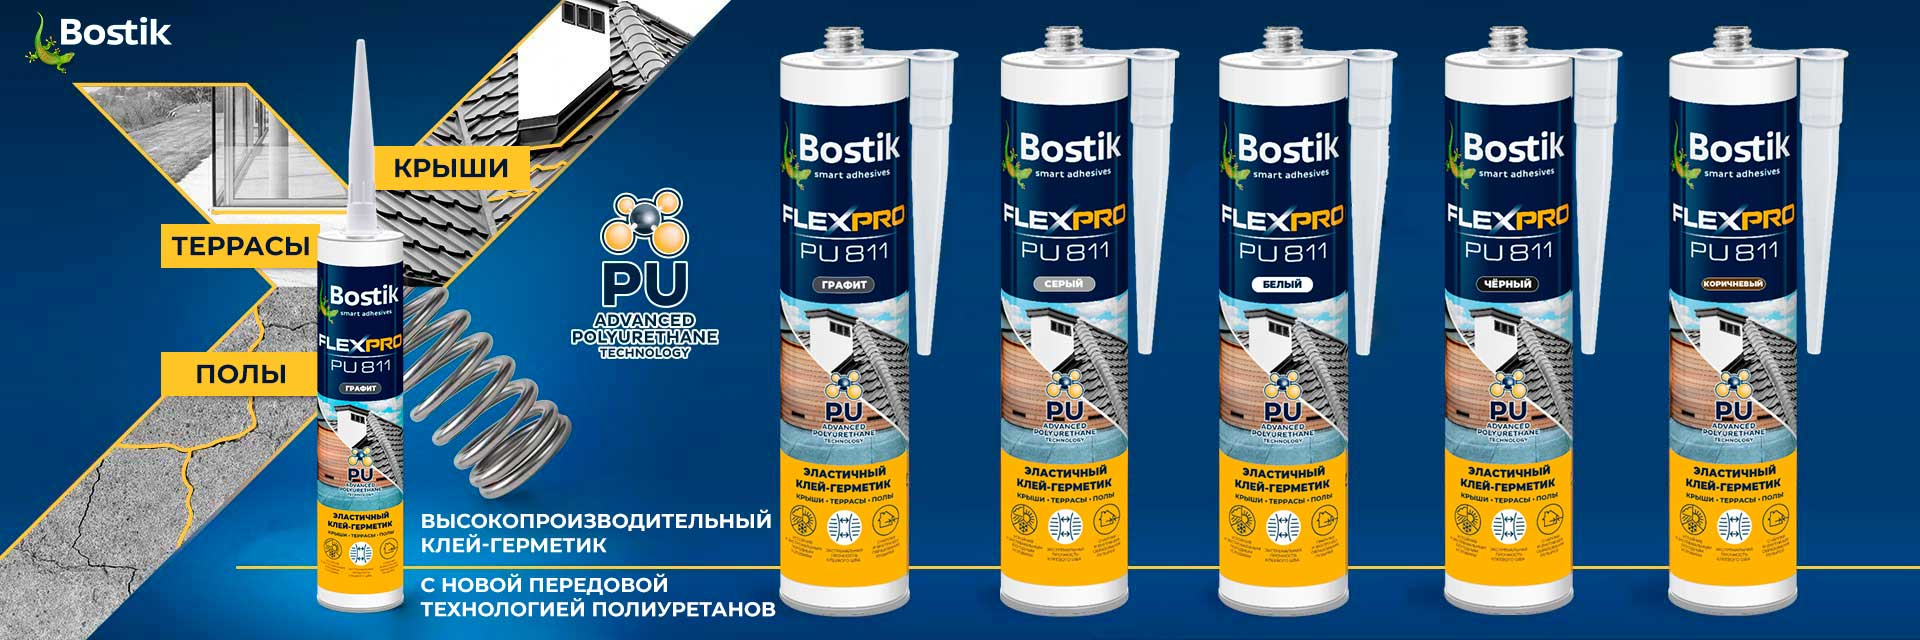 Bostik DIY Russia Flexpro range banner image